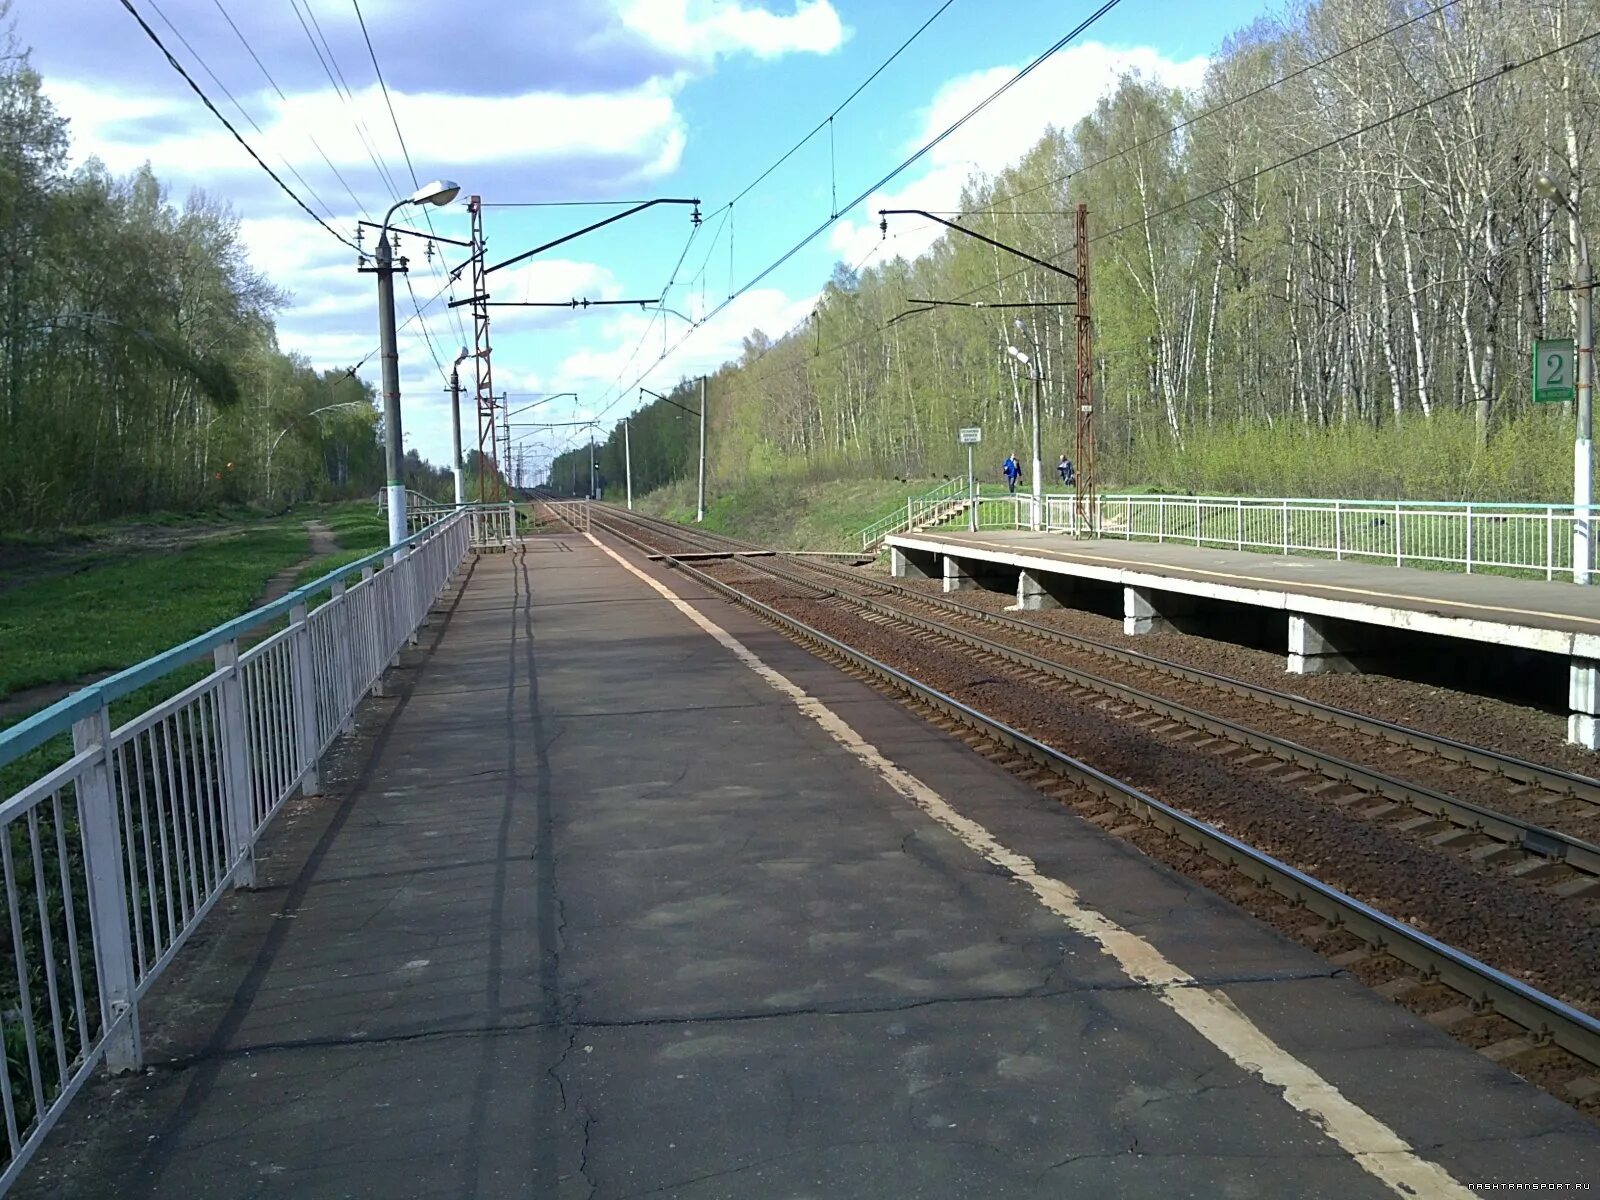 Станция 52 км. Платформа 52 км Павелецкого направления. Станция 52 км Павелецкое. Пл 52 км Павелецкого направления. Путь длиной 52 км